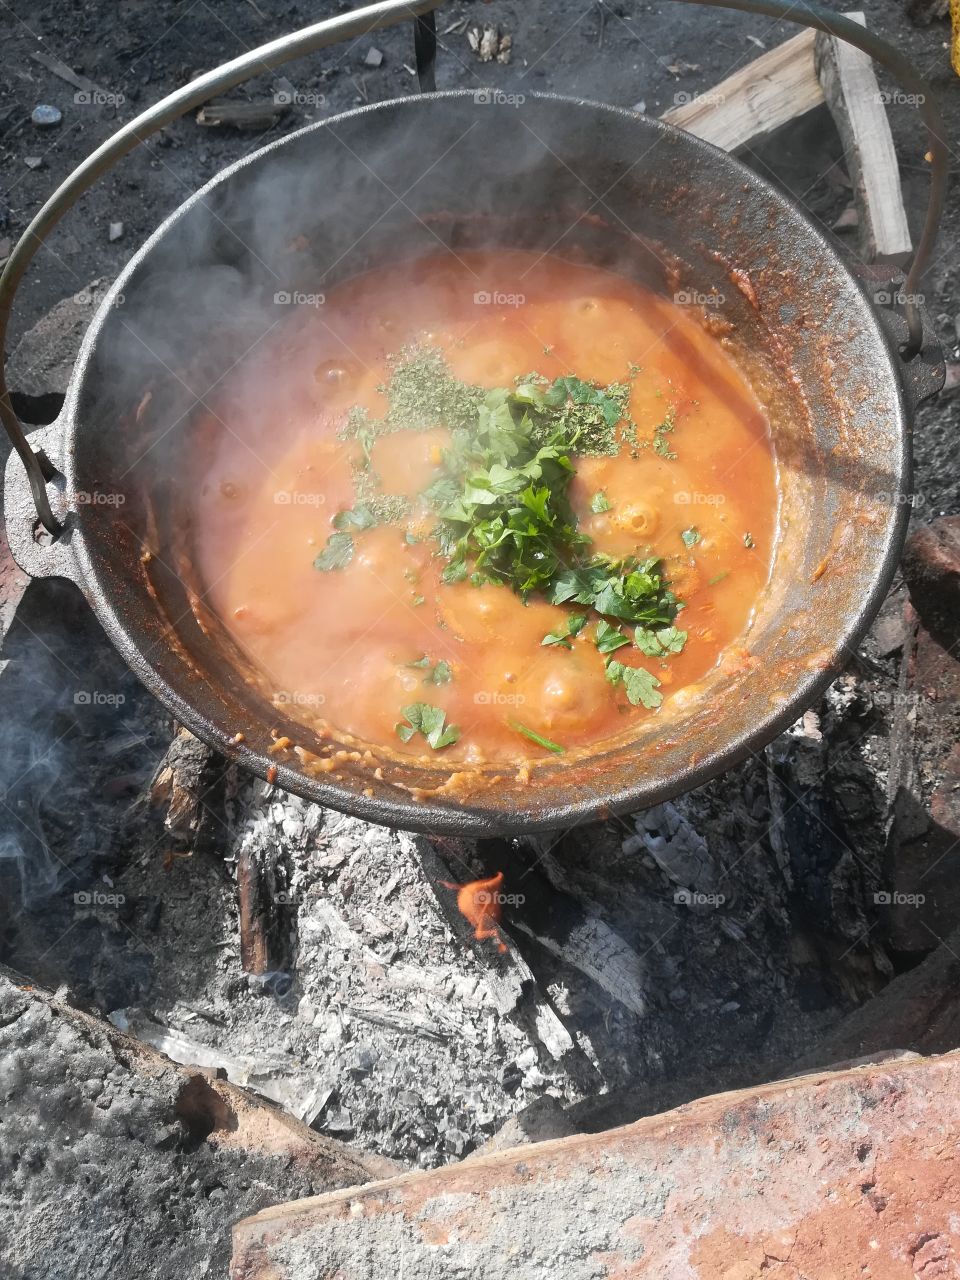 Best stew